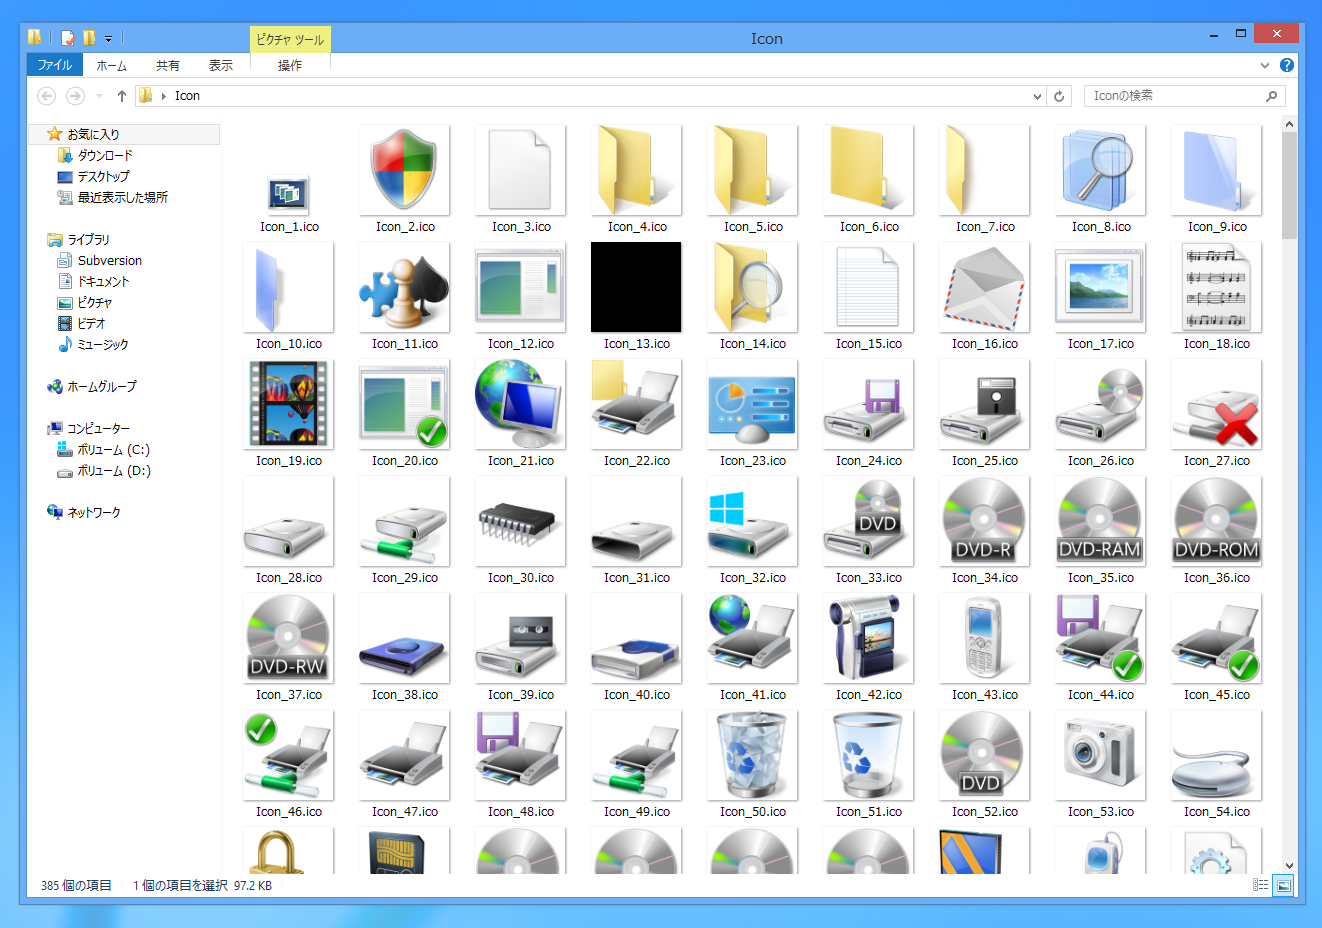 Windows 8のアイコン画像はどこに保存されているのか Windows 8 アイコン画像保存先dll Windows 8 8 1 の操作方法とtips